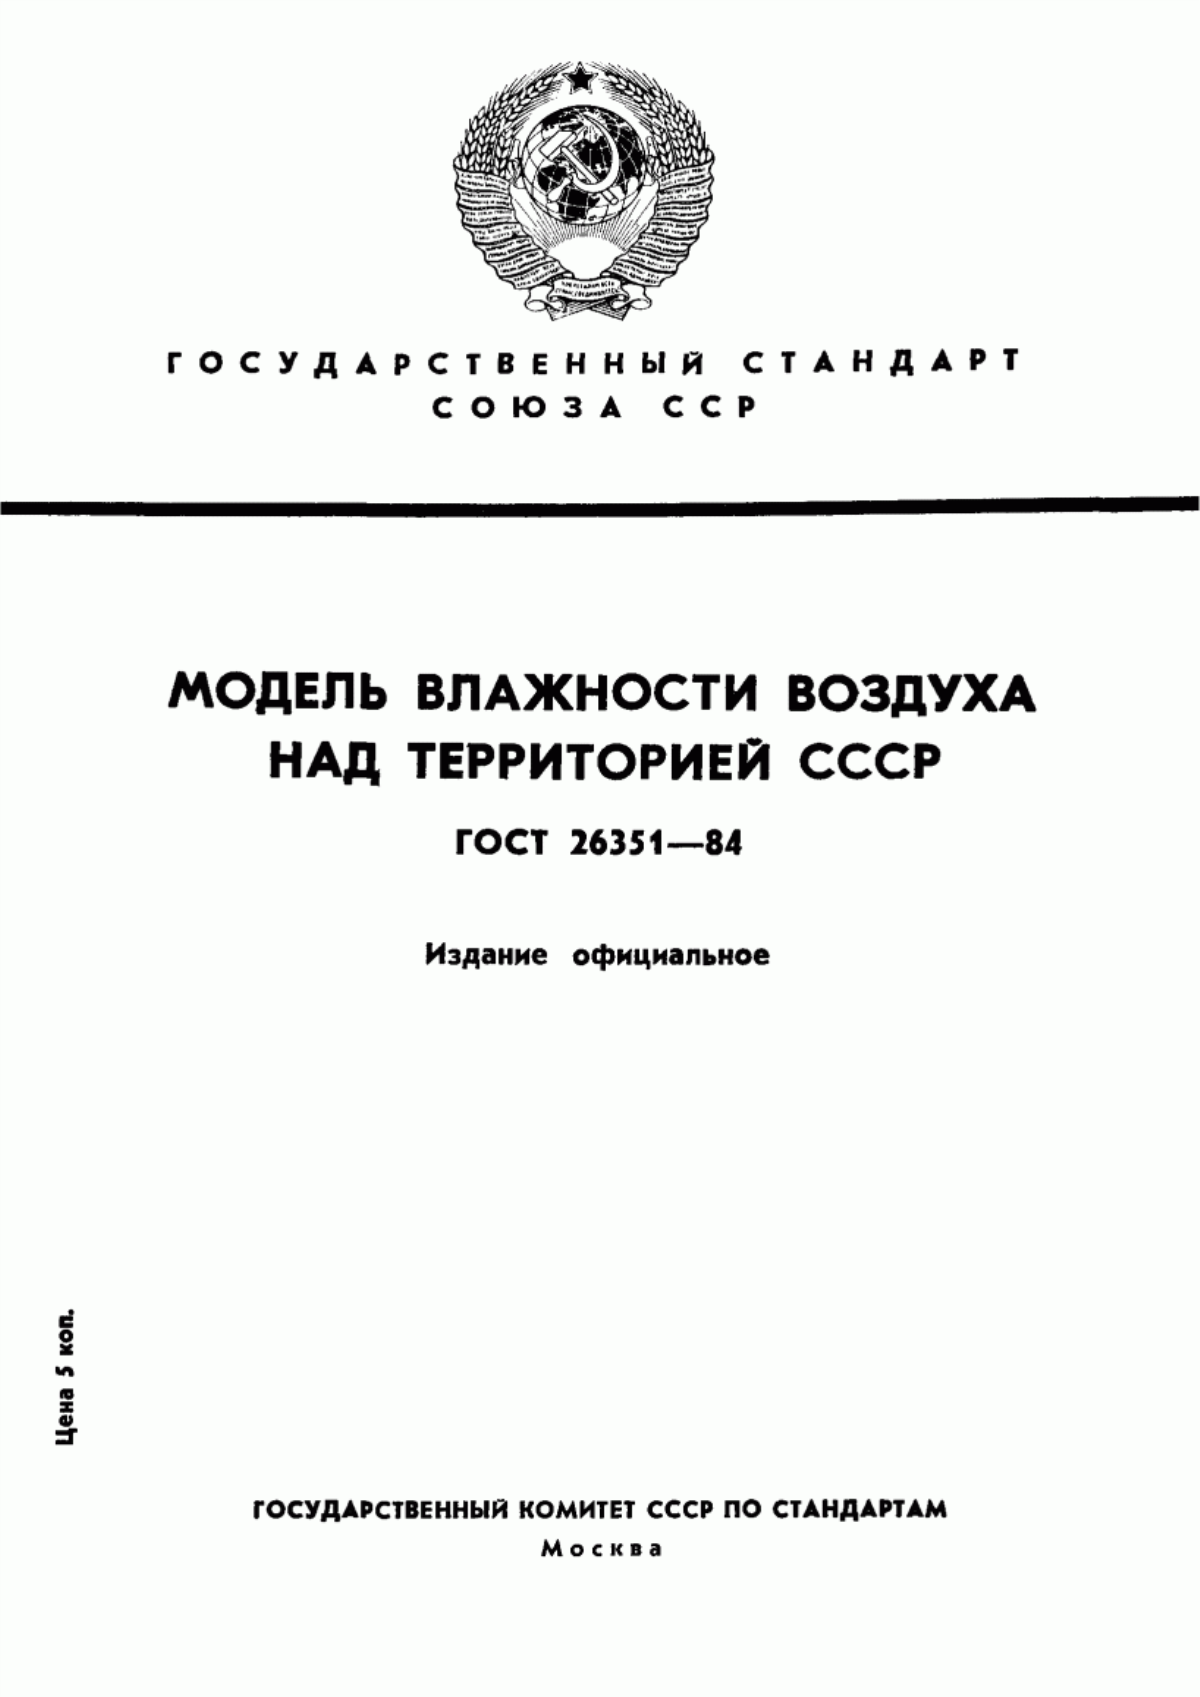 ГОСТ 26351-84 Модель влажности воздуха над территорией СССР